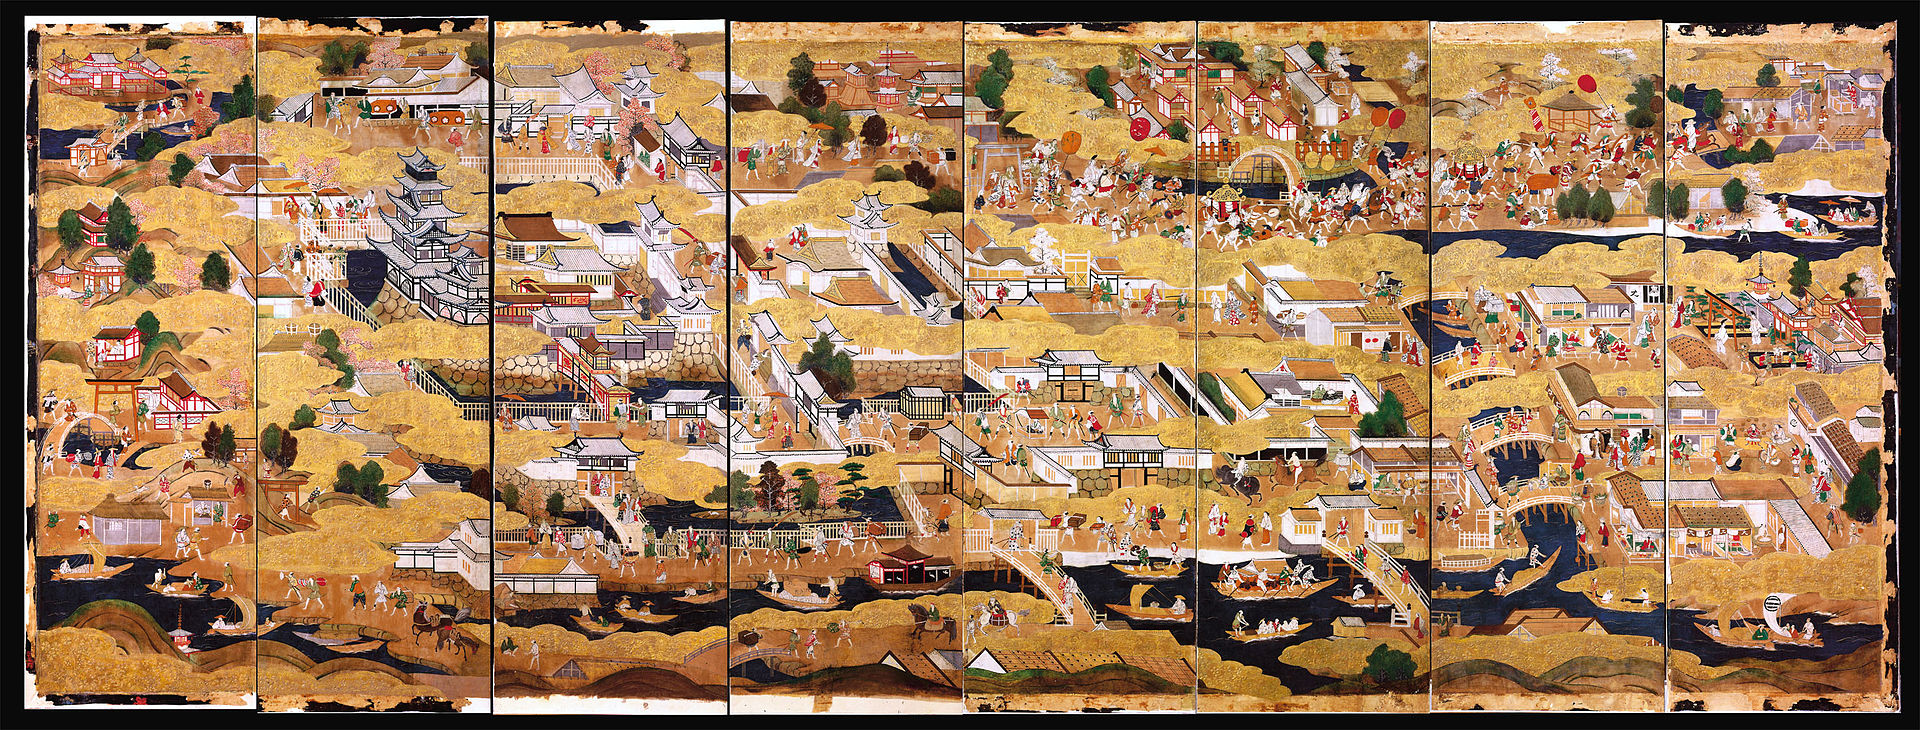 豊臣期大坂図屏風に描かれた大坂城と城下の賑わい